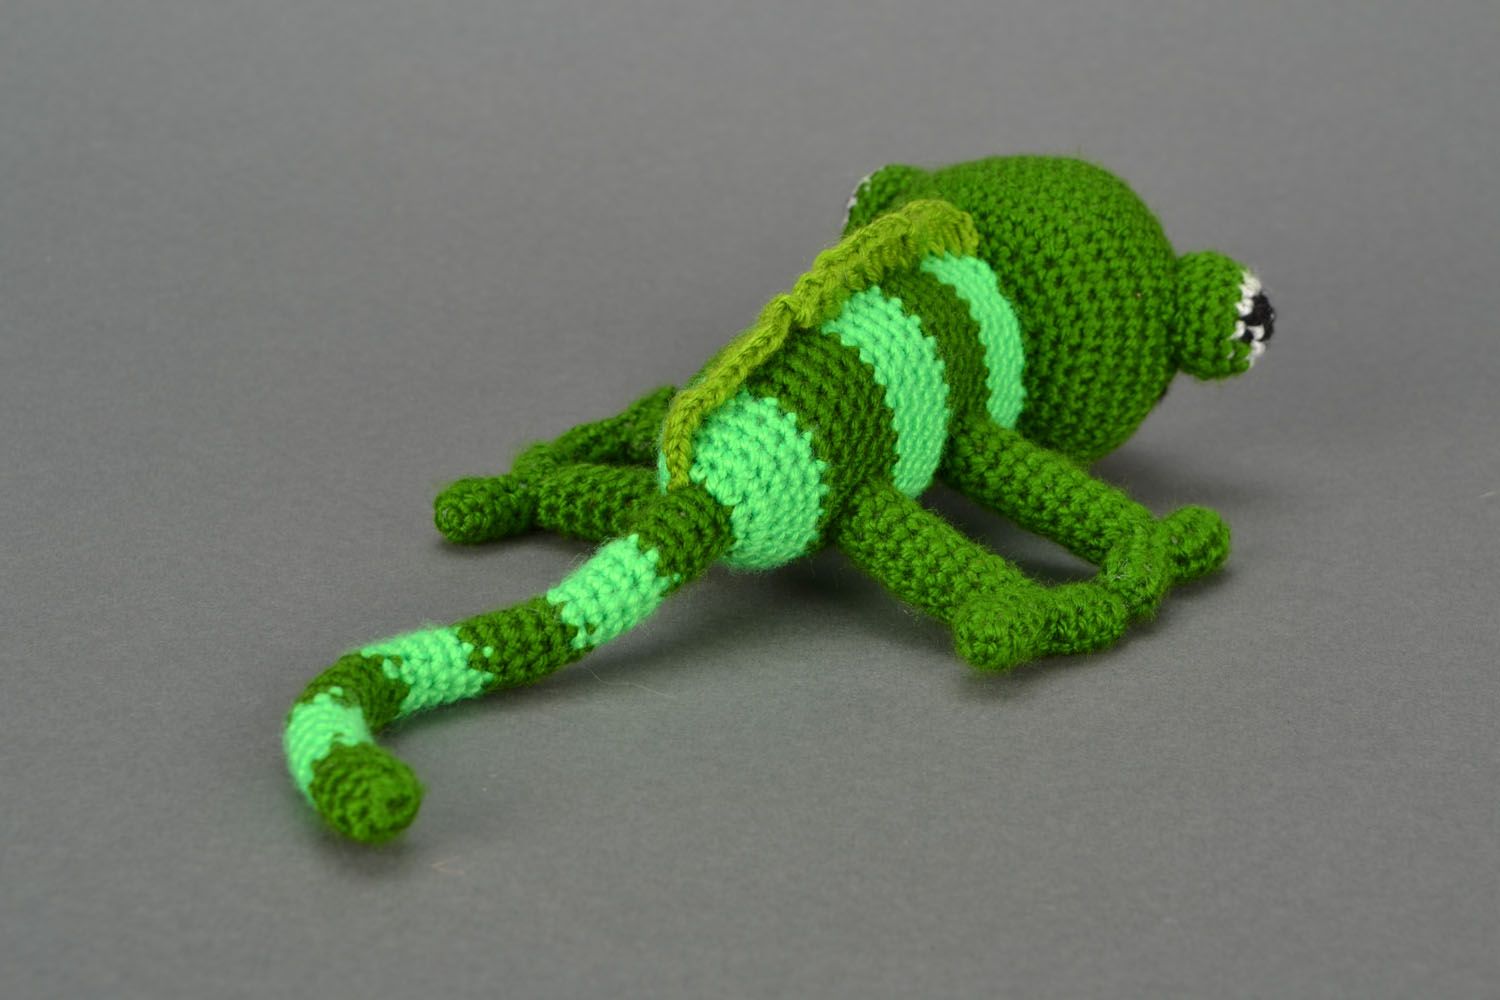 Homemade crochet toy Chameleon photo 5